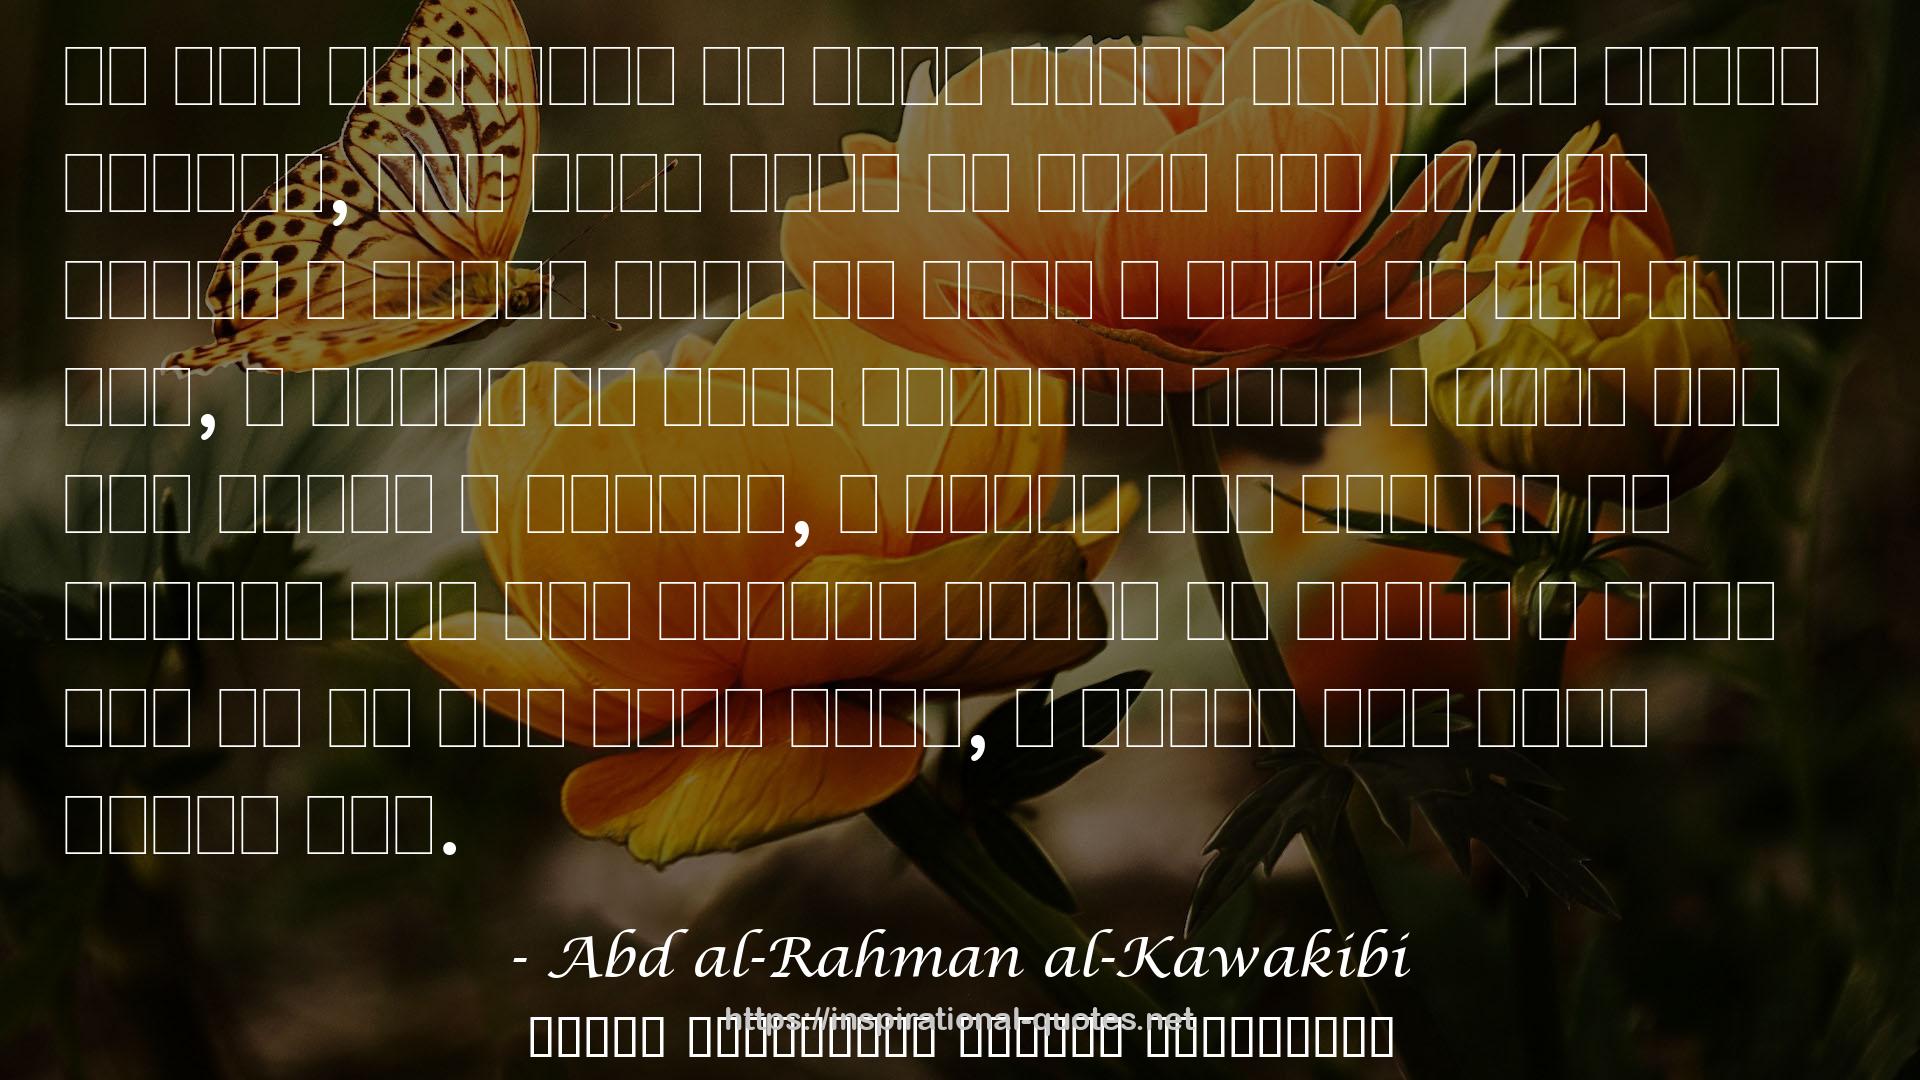 Abd al-Rahman al-Kawakibi QUOTES